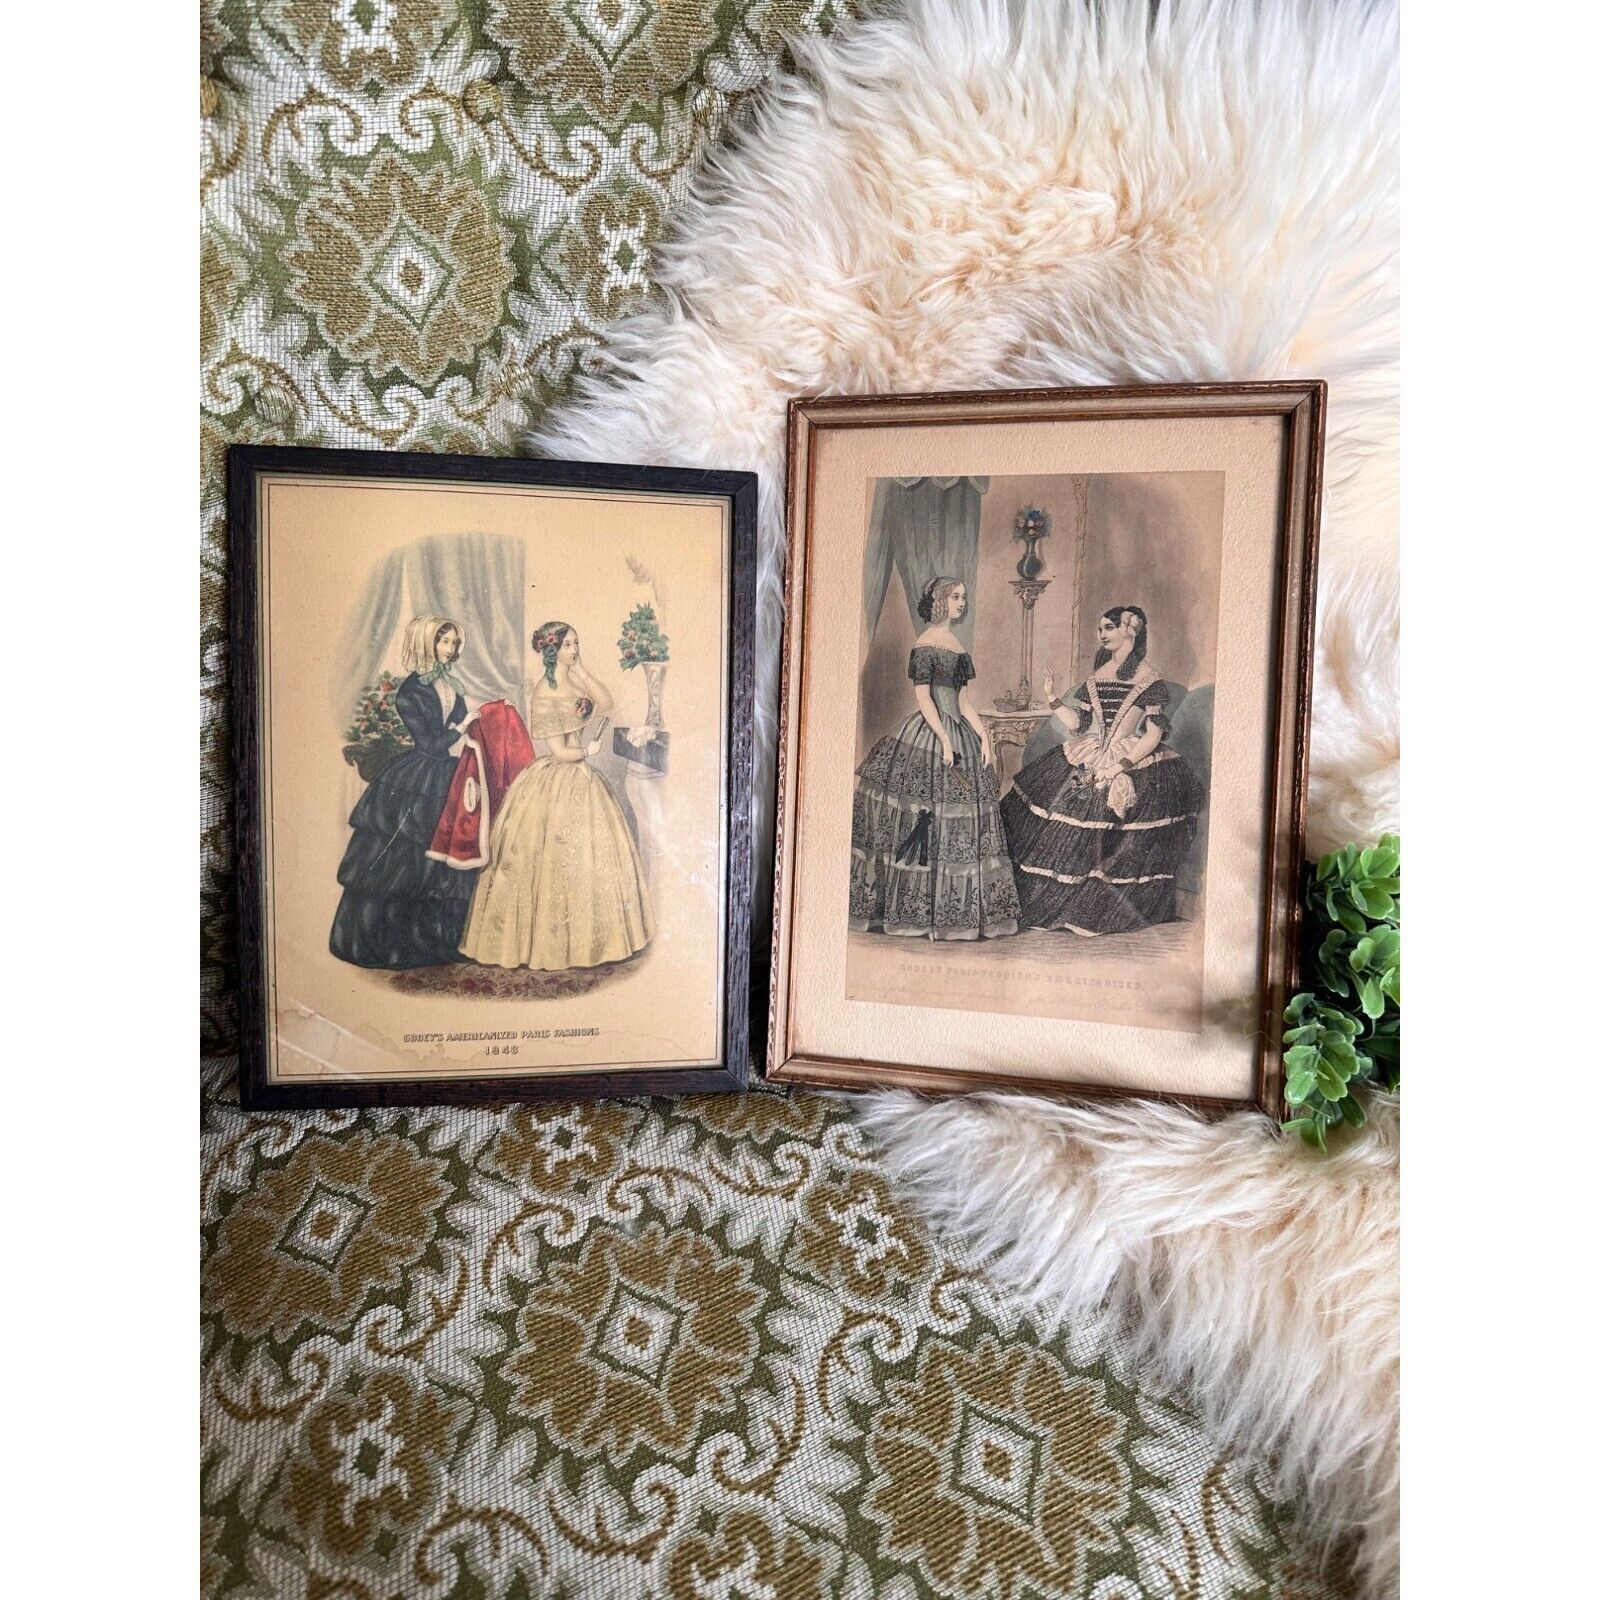 Antique French Fashion Lithograph Prints Wood Frames Pair Vintage 1800s Paris